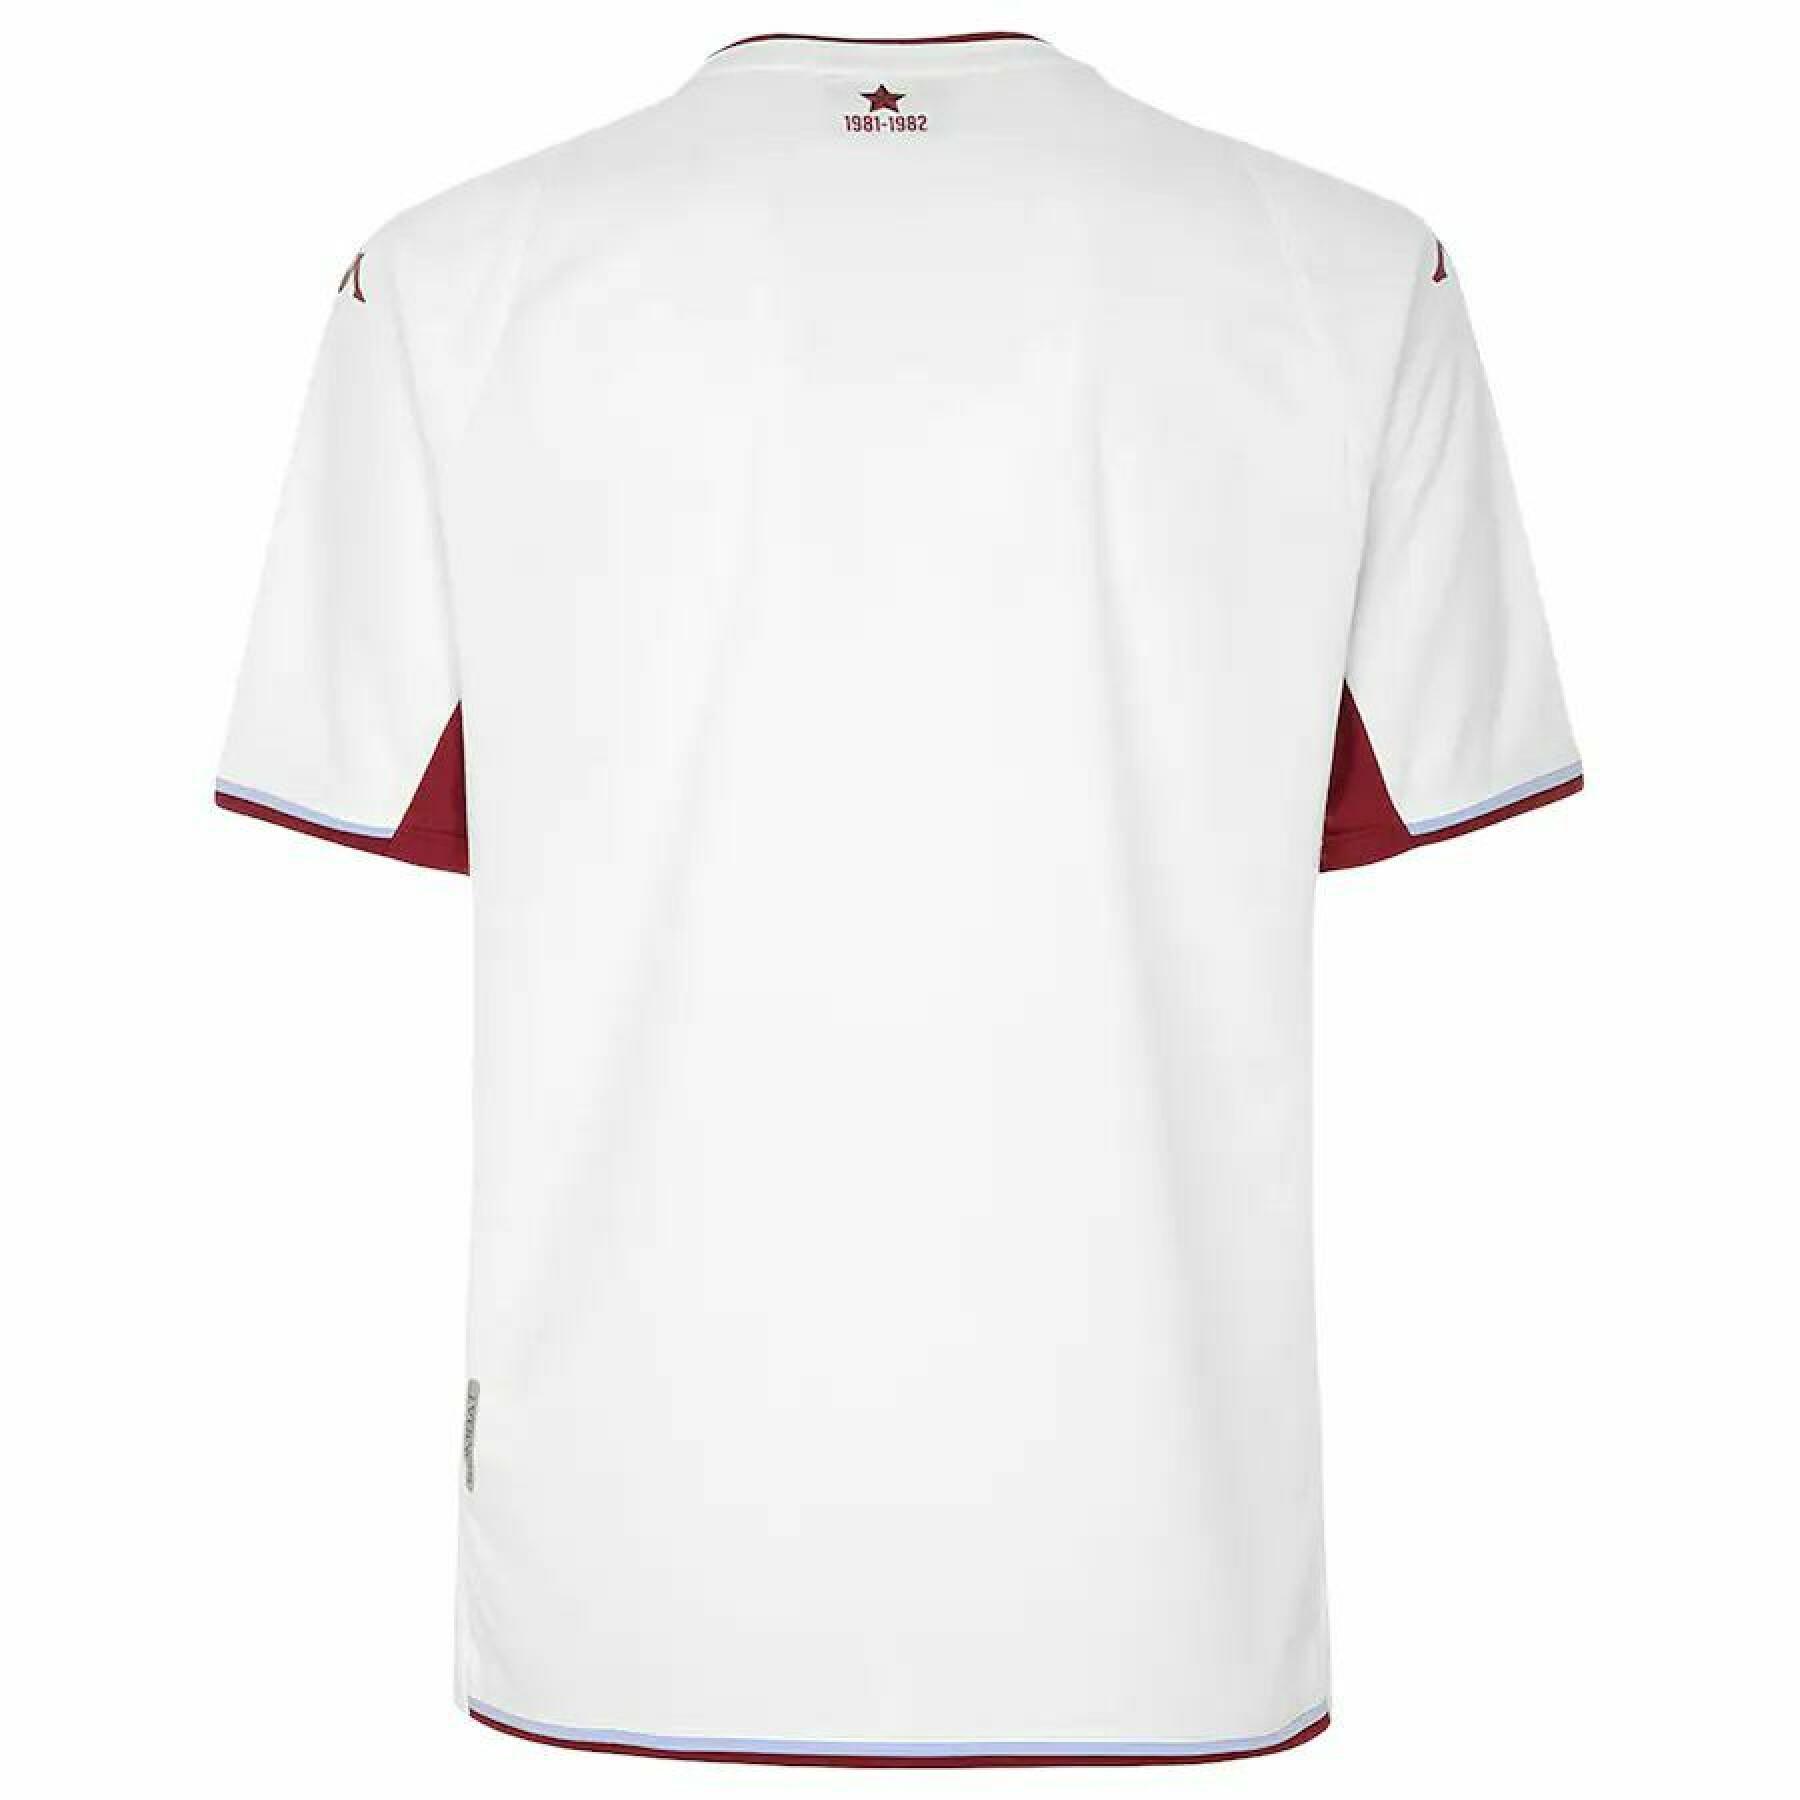 Children's outdoor jersey Aston Villa FC 2021/22